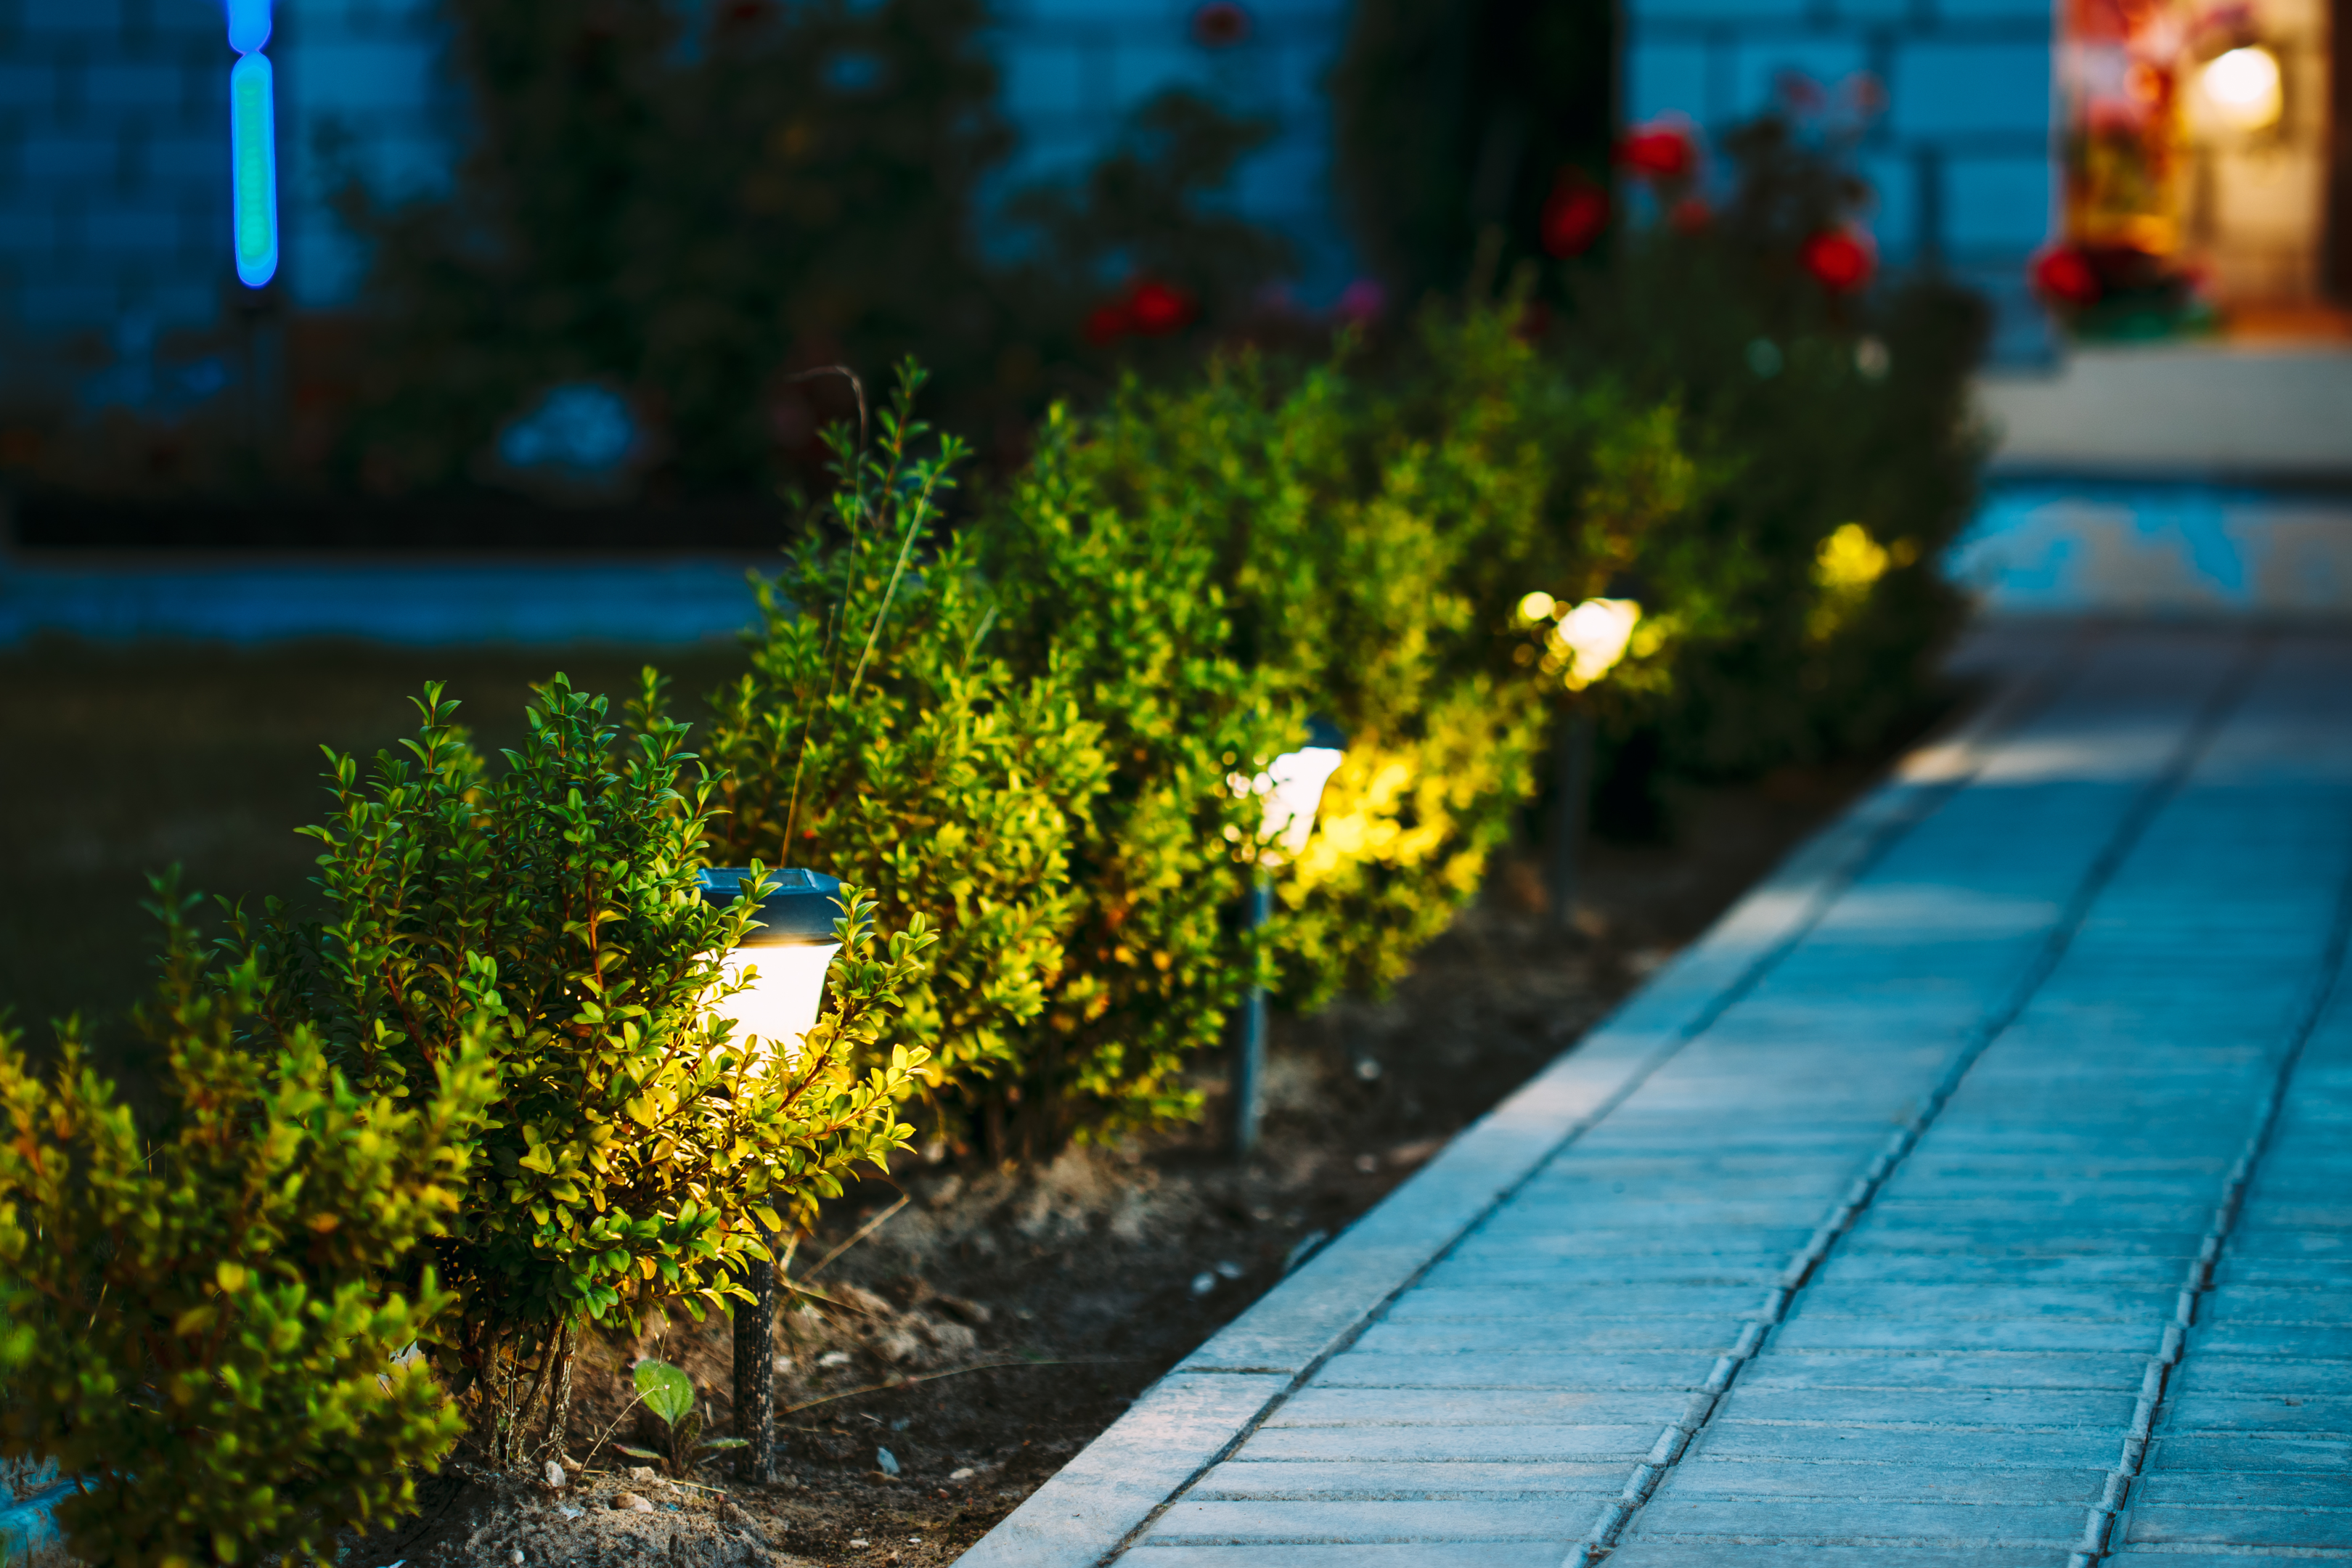 tuinverlichting is één van de slimste smart home ideeën genoemd